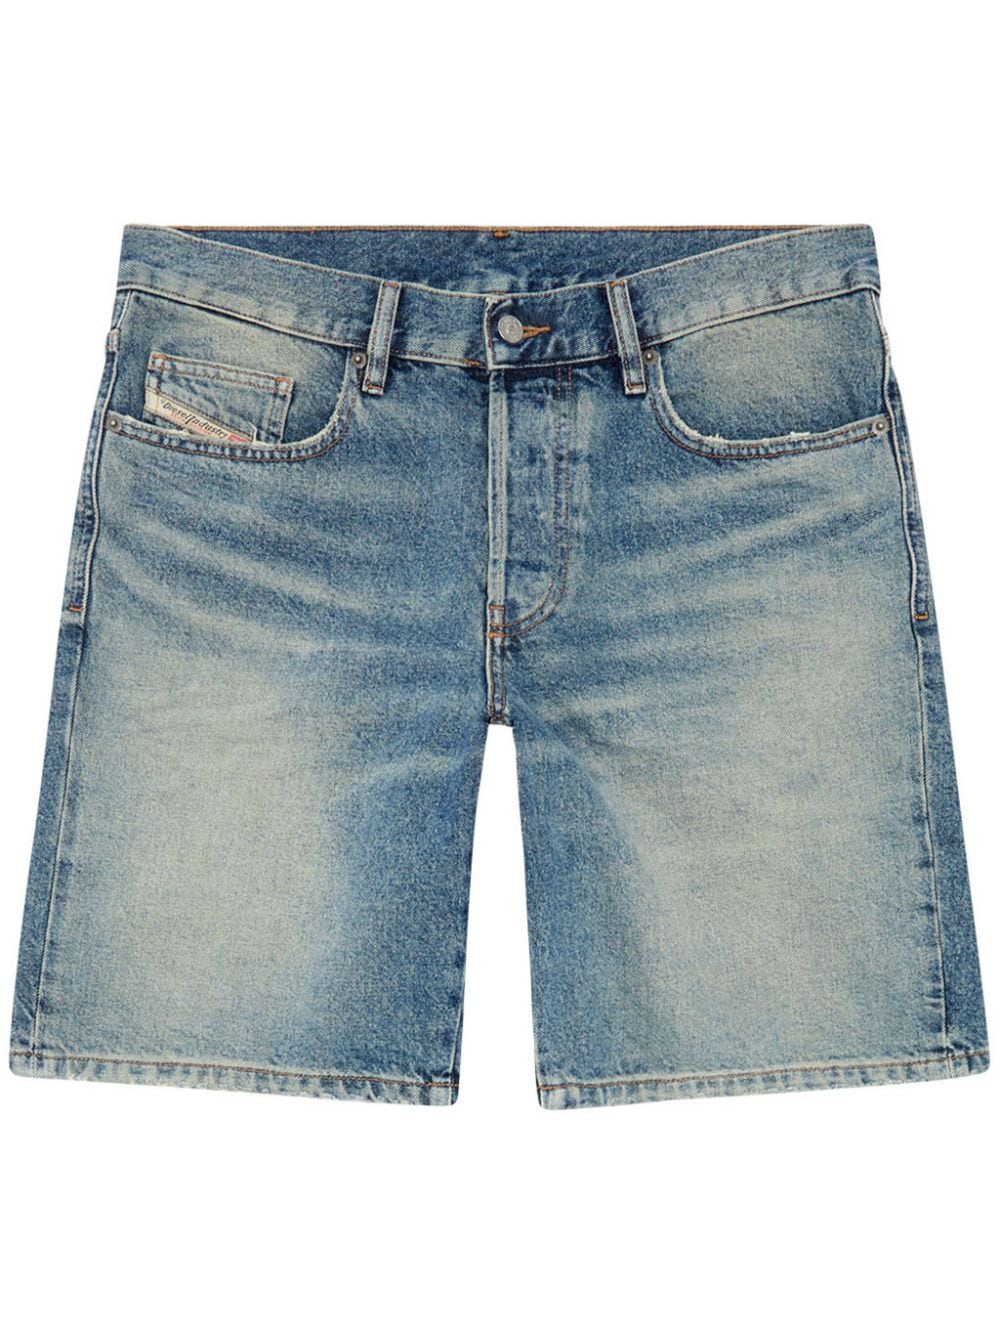 Diesel straight-leg denim shorts - Blau